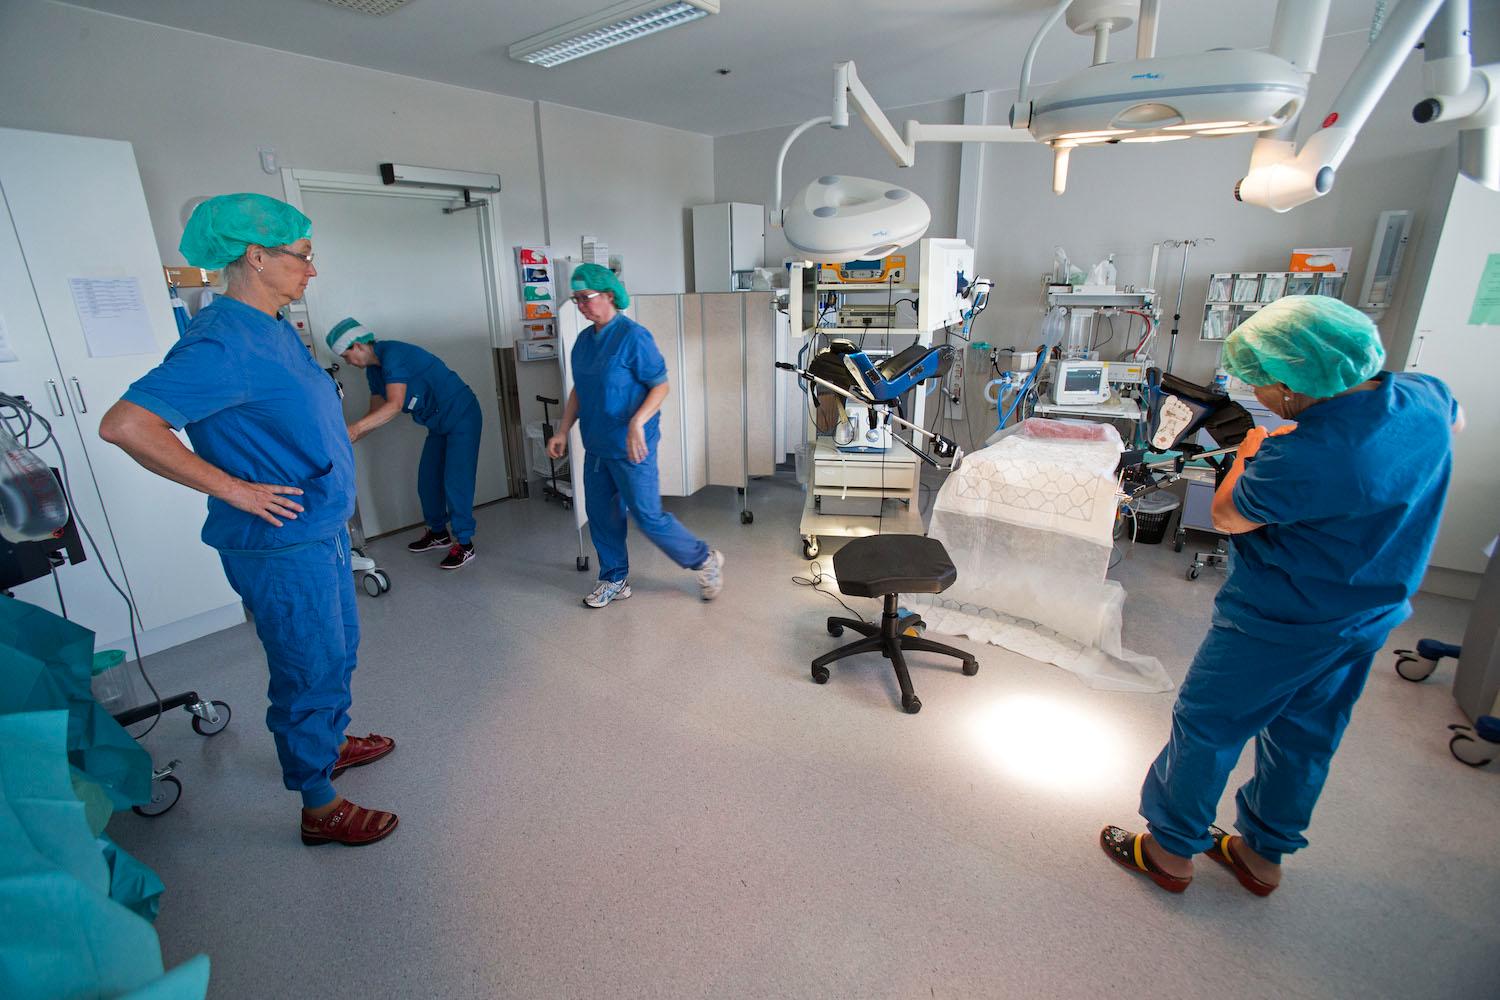 Eva Uustals operationsteam på kvinnokliniken på Linköpins universitetssjukhus.